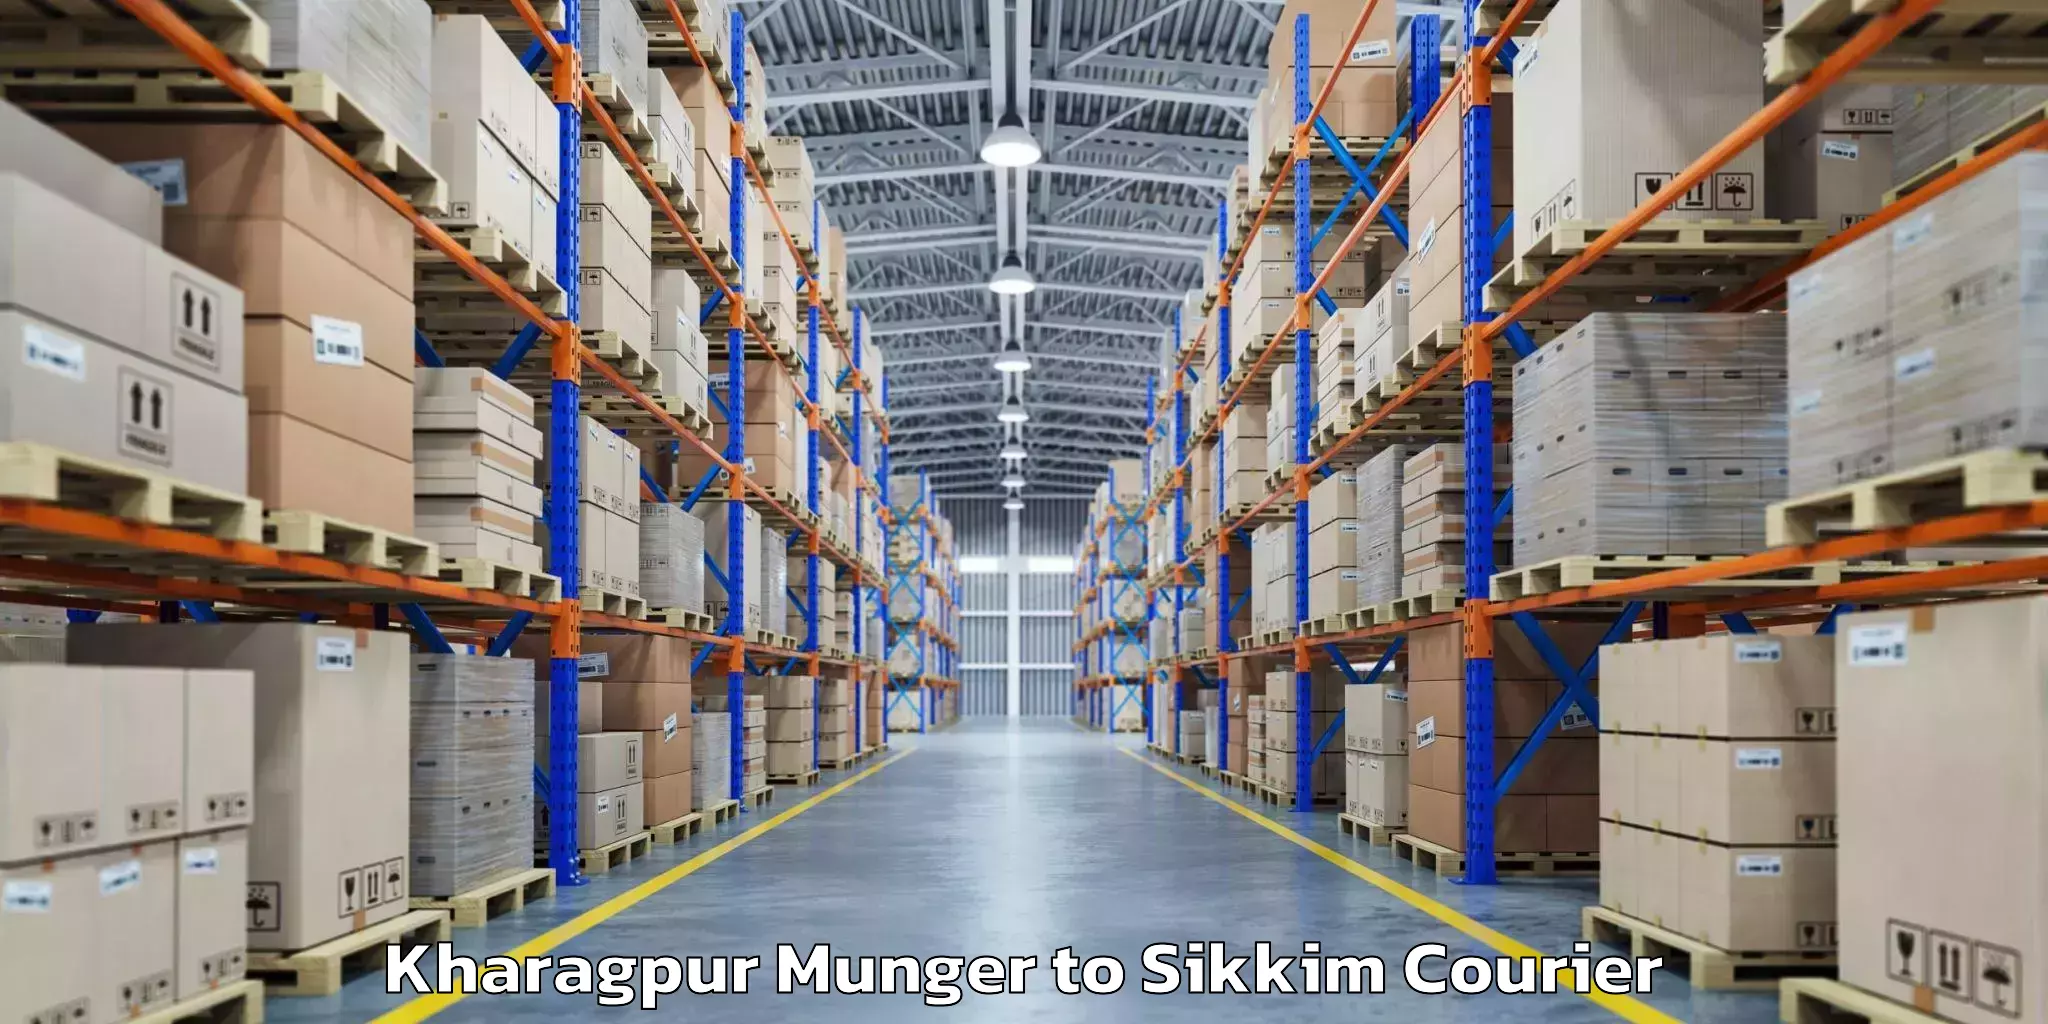 Baggage transport technology Kharagpur Munger to Jorethang